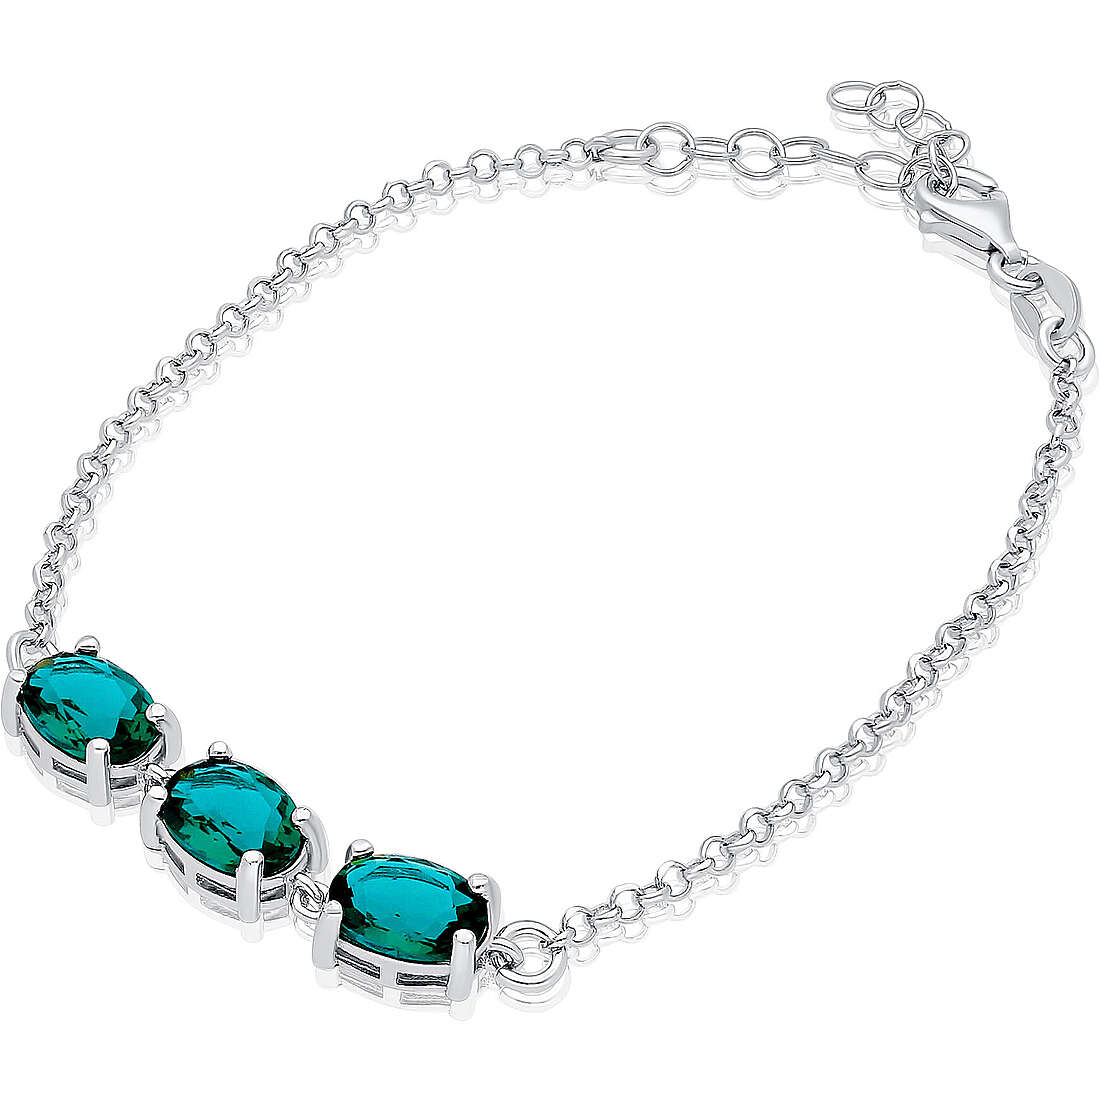 bracelet woman Charms/Beads 925 Silver jewel GioiaPura ST66936-01RHSM